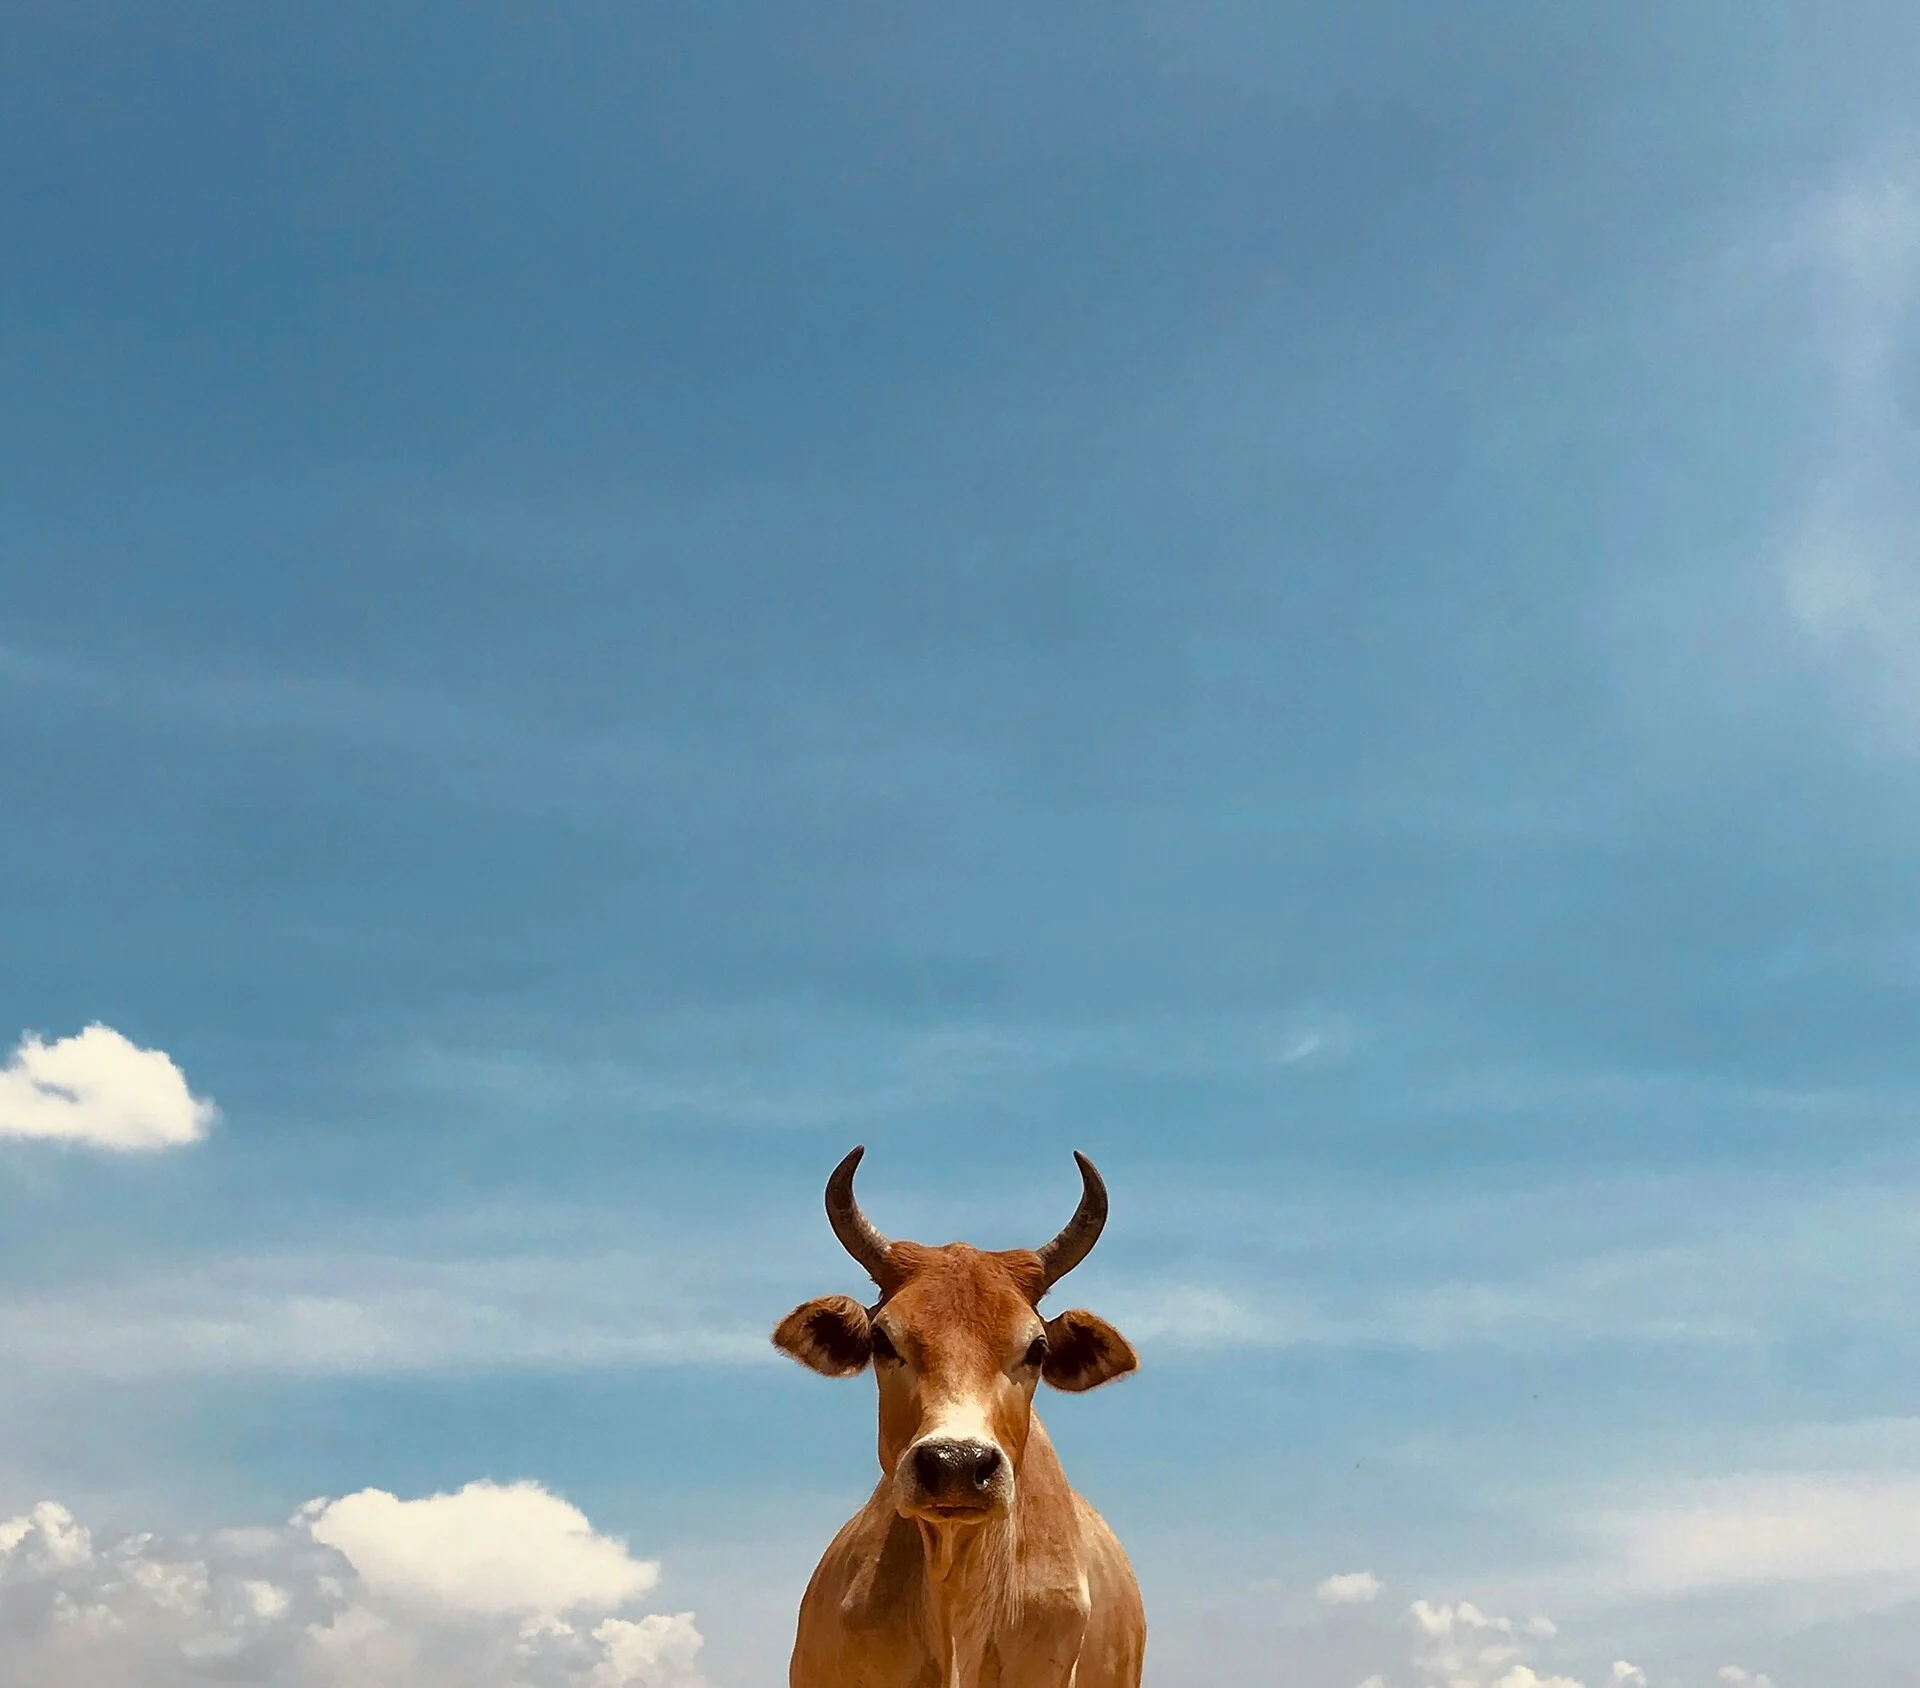 Κρήτη: Σούβλισαν ταύρο σε γλέντι στα Χανιά – Αντιδράσεις από φιλοζωικές